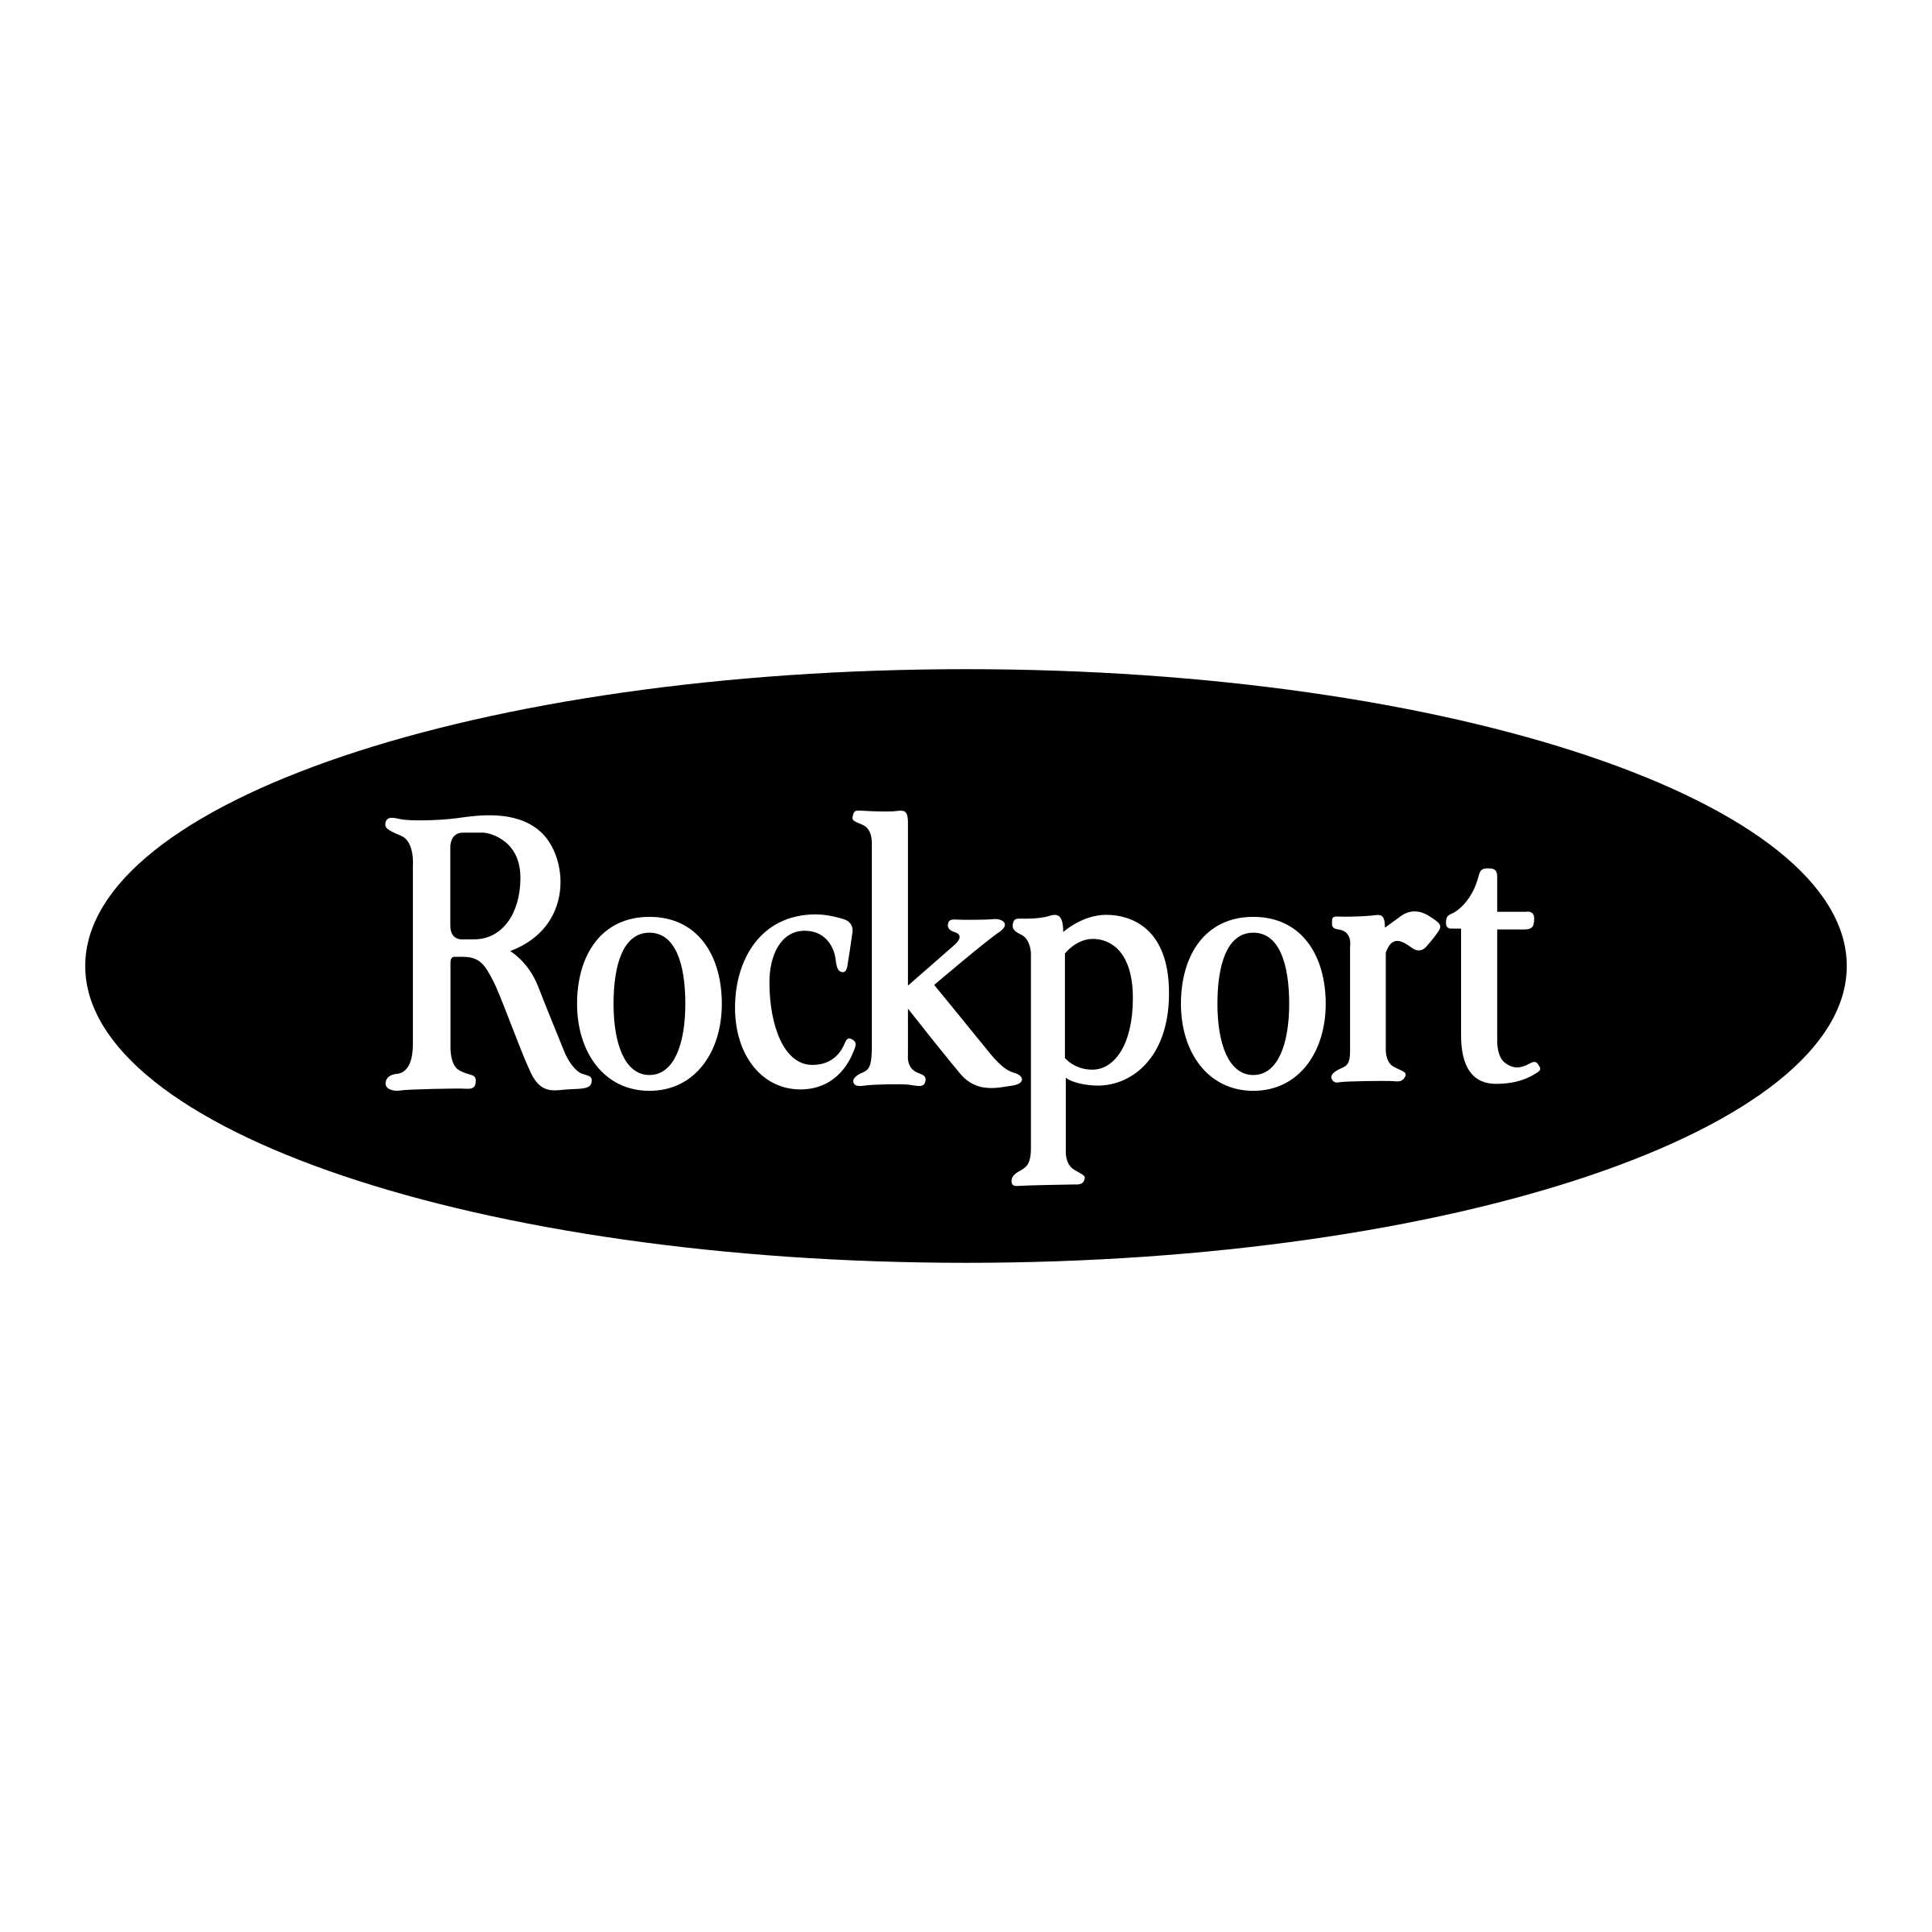 rockport-1-logo-png-transparent